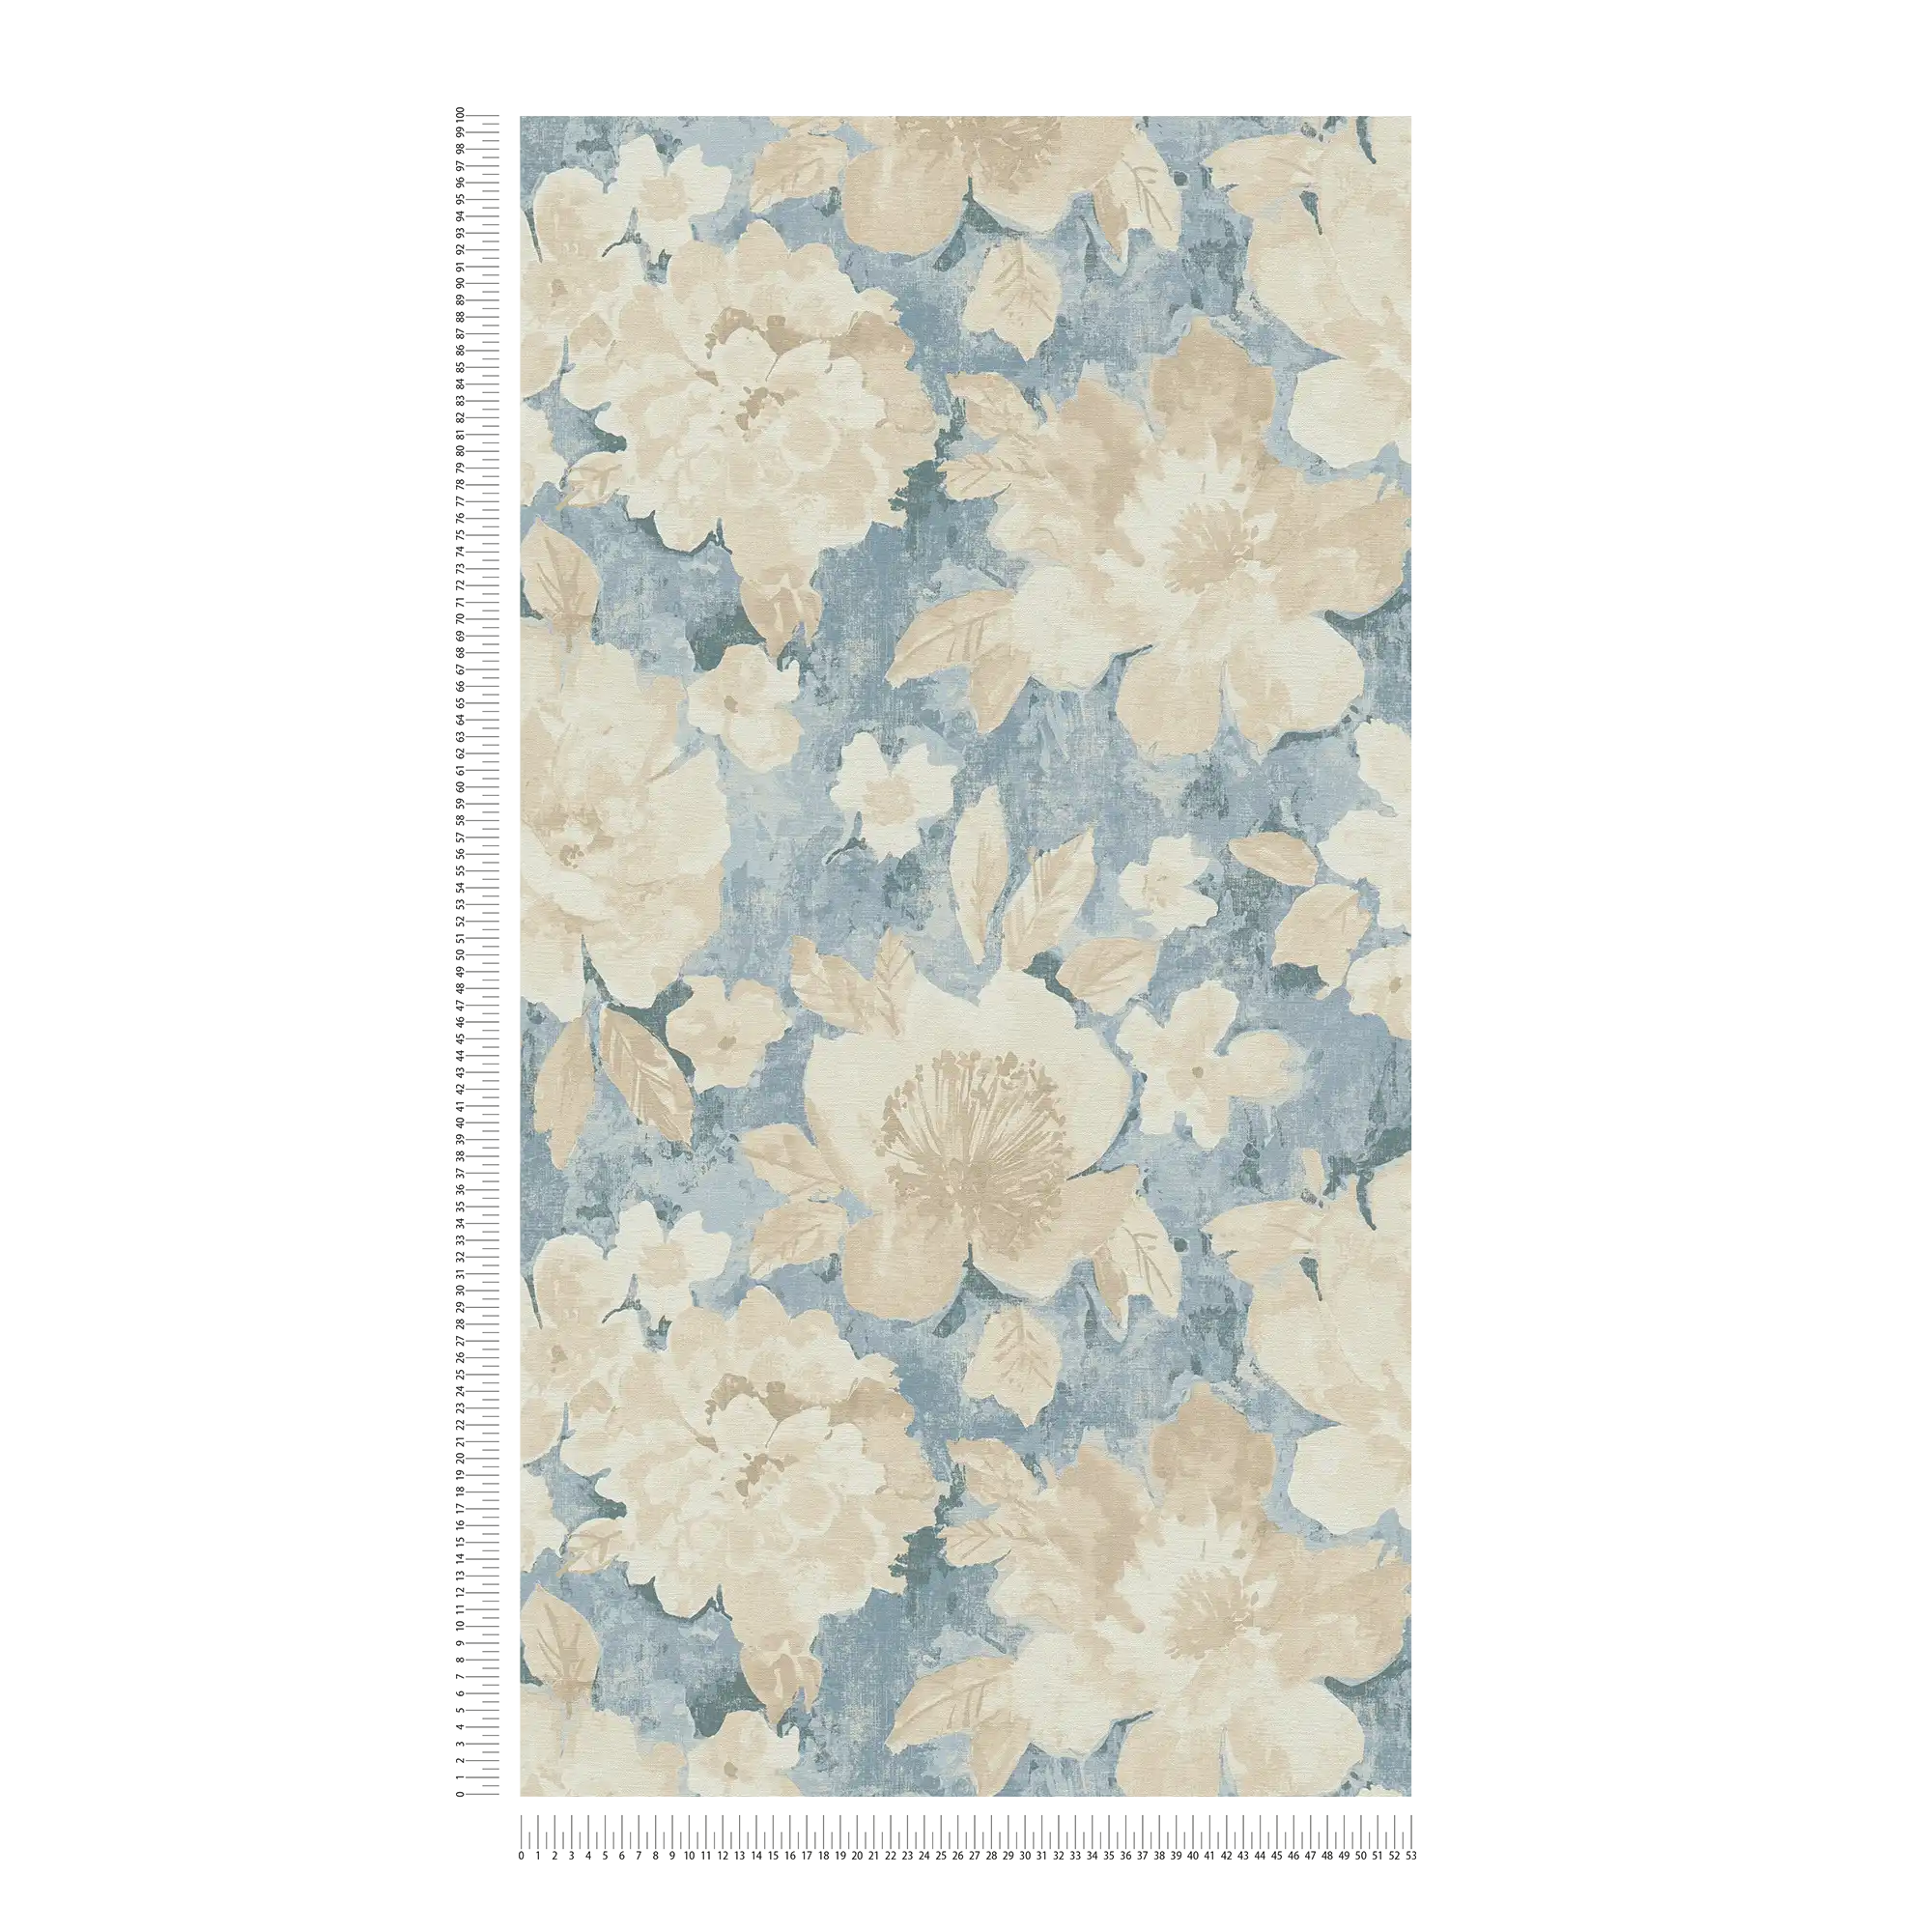             Blumen-Vliestapete im Aquarell- und Vintagelook – Blau, Beige, Creme
        